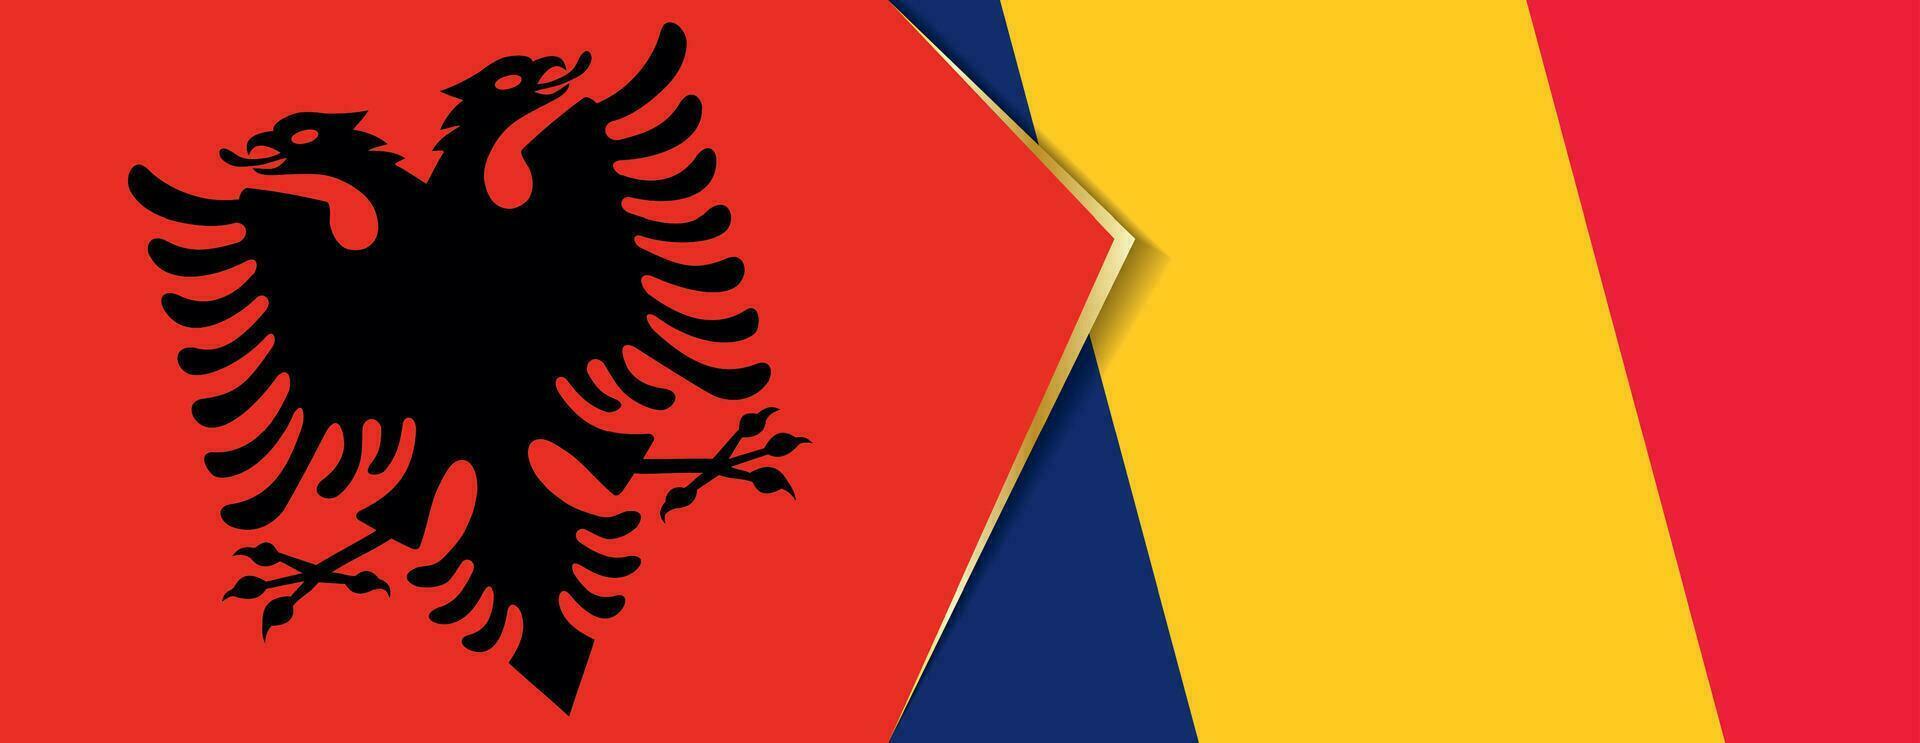 albania och chad flaggor, två vektor flaggor.